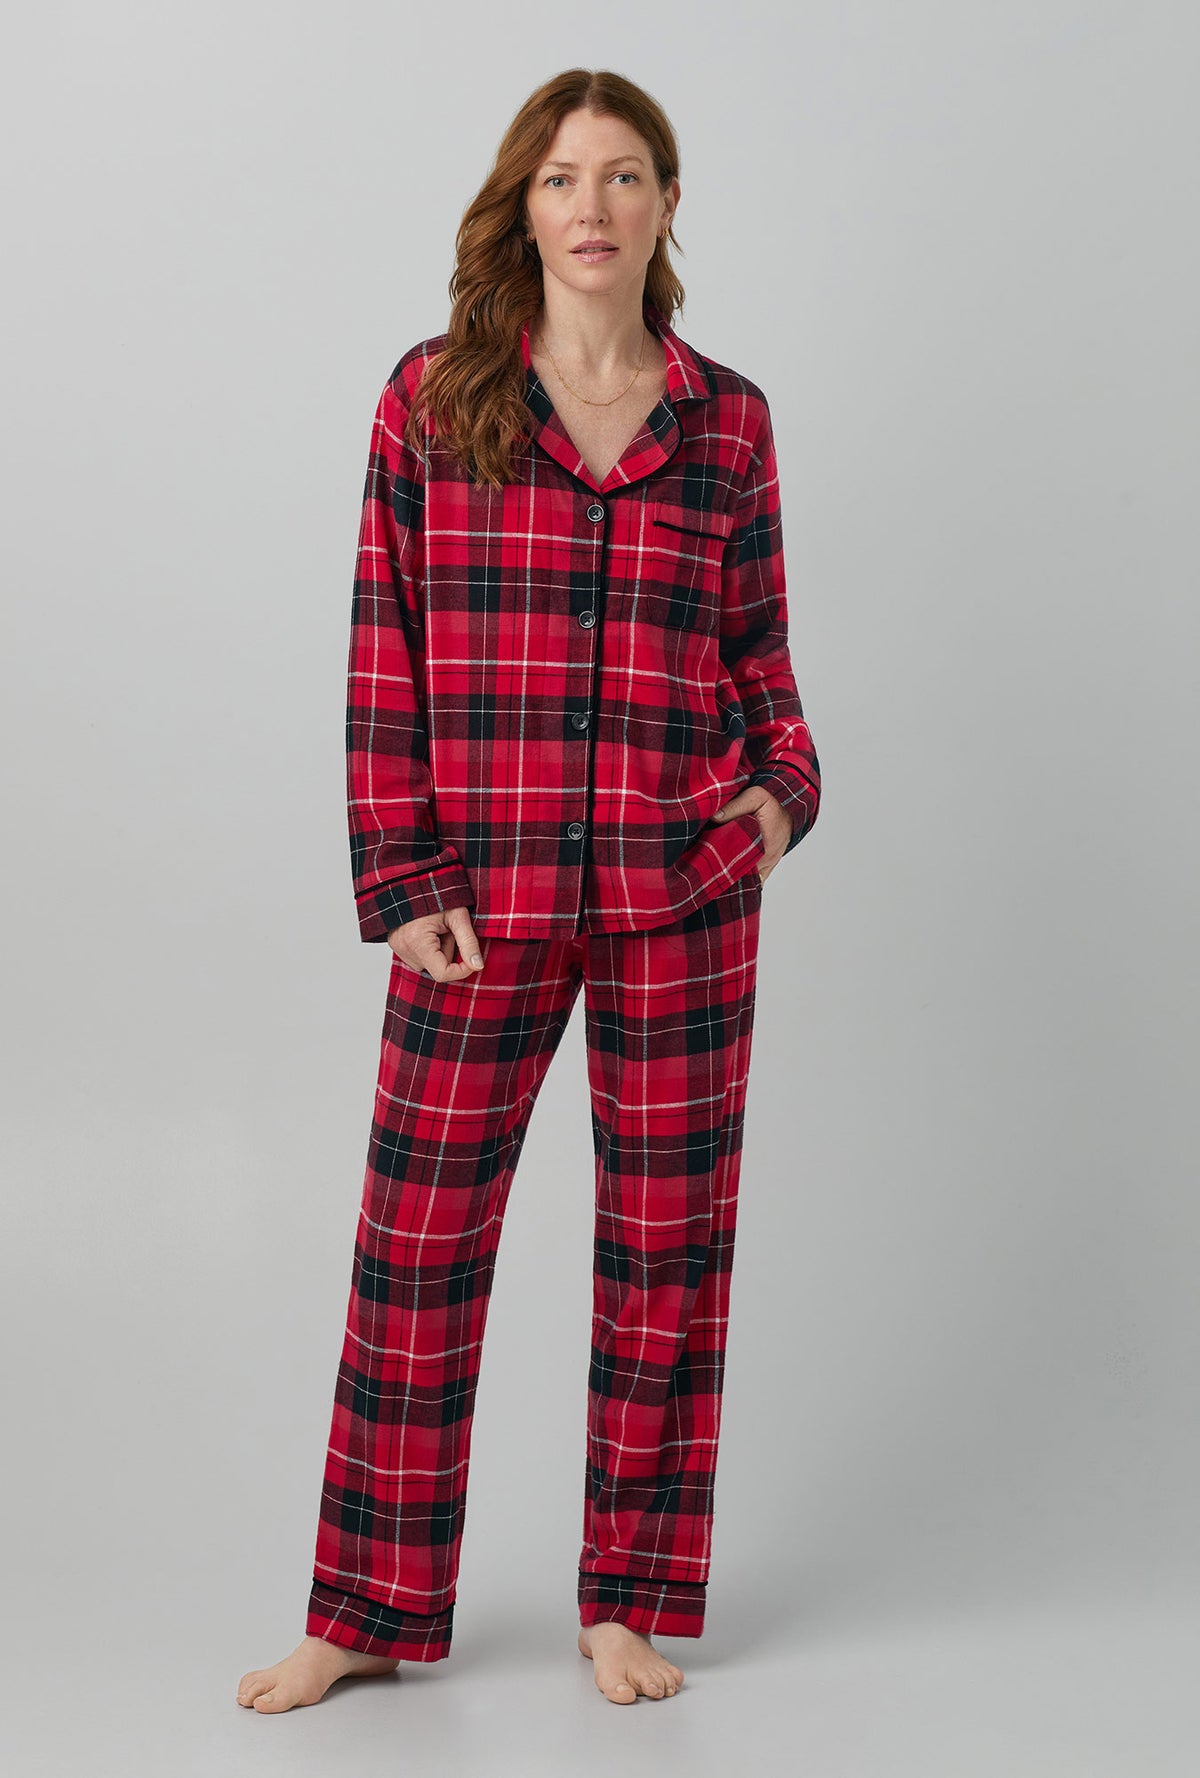 Flannel Pajama Set, Classic Pajama Set, Valentine's Day Gift. 